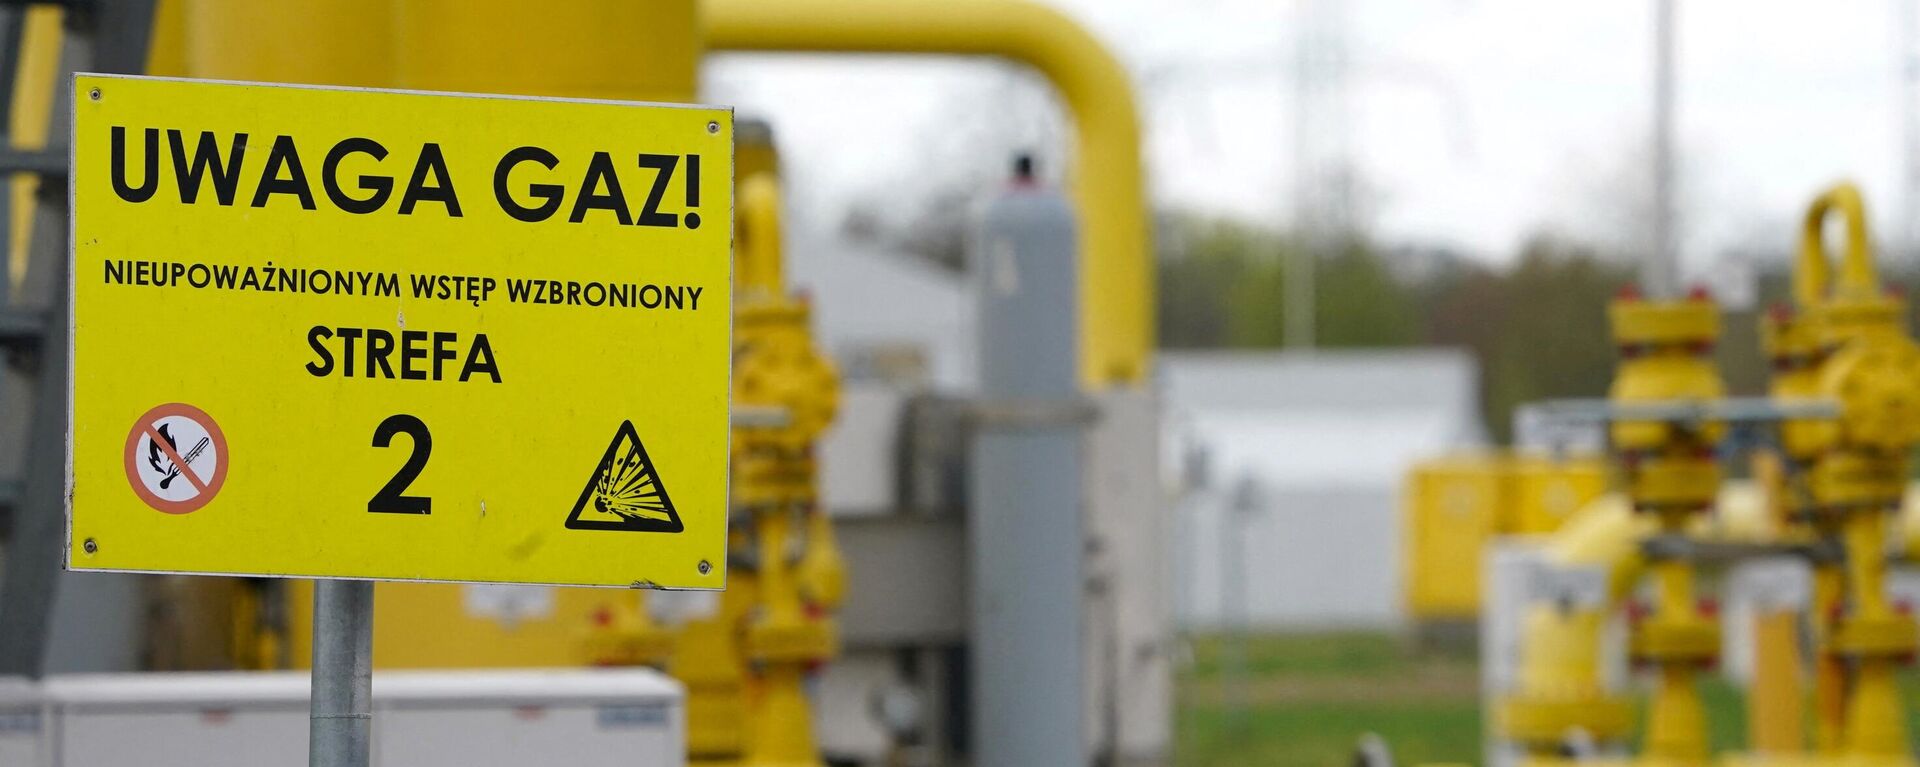 A inscrição em uma placa diz 'Uwaga gaz' (gás de atenção) no ponto de transmissão de gás em Rembelszczyzna, perto de Varsóvia, em 27 de abril de 2022. - Sputnik Brasil, 1920, 23.05.2022